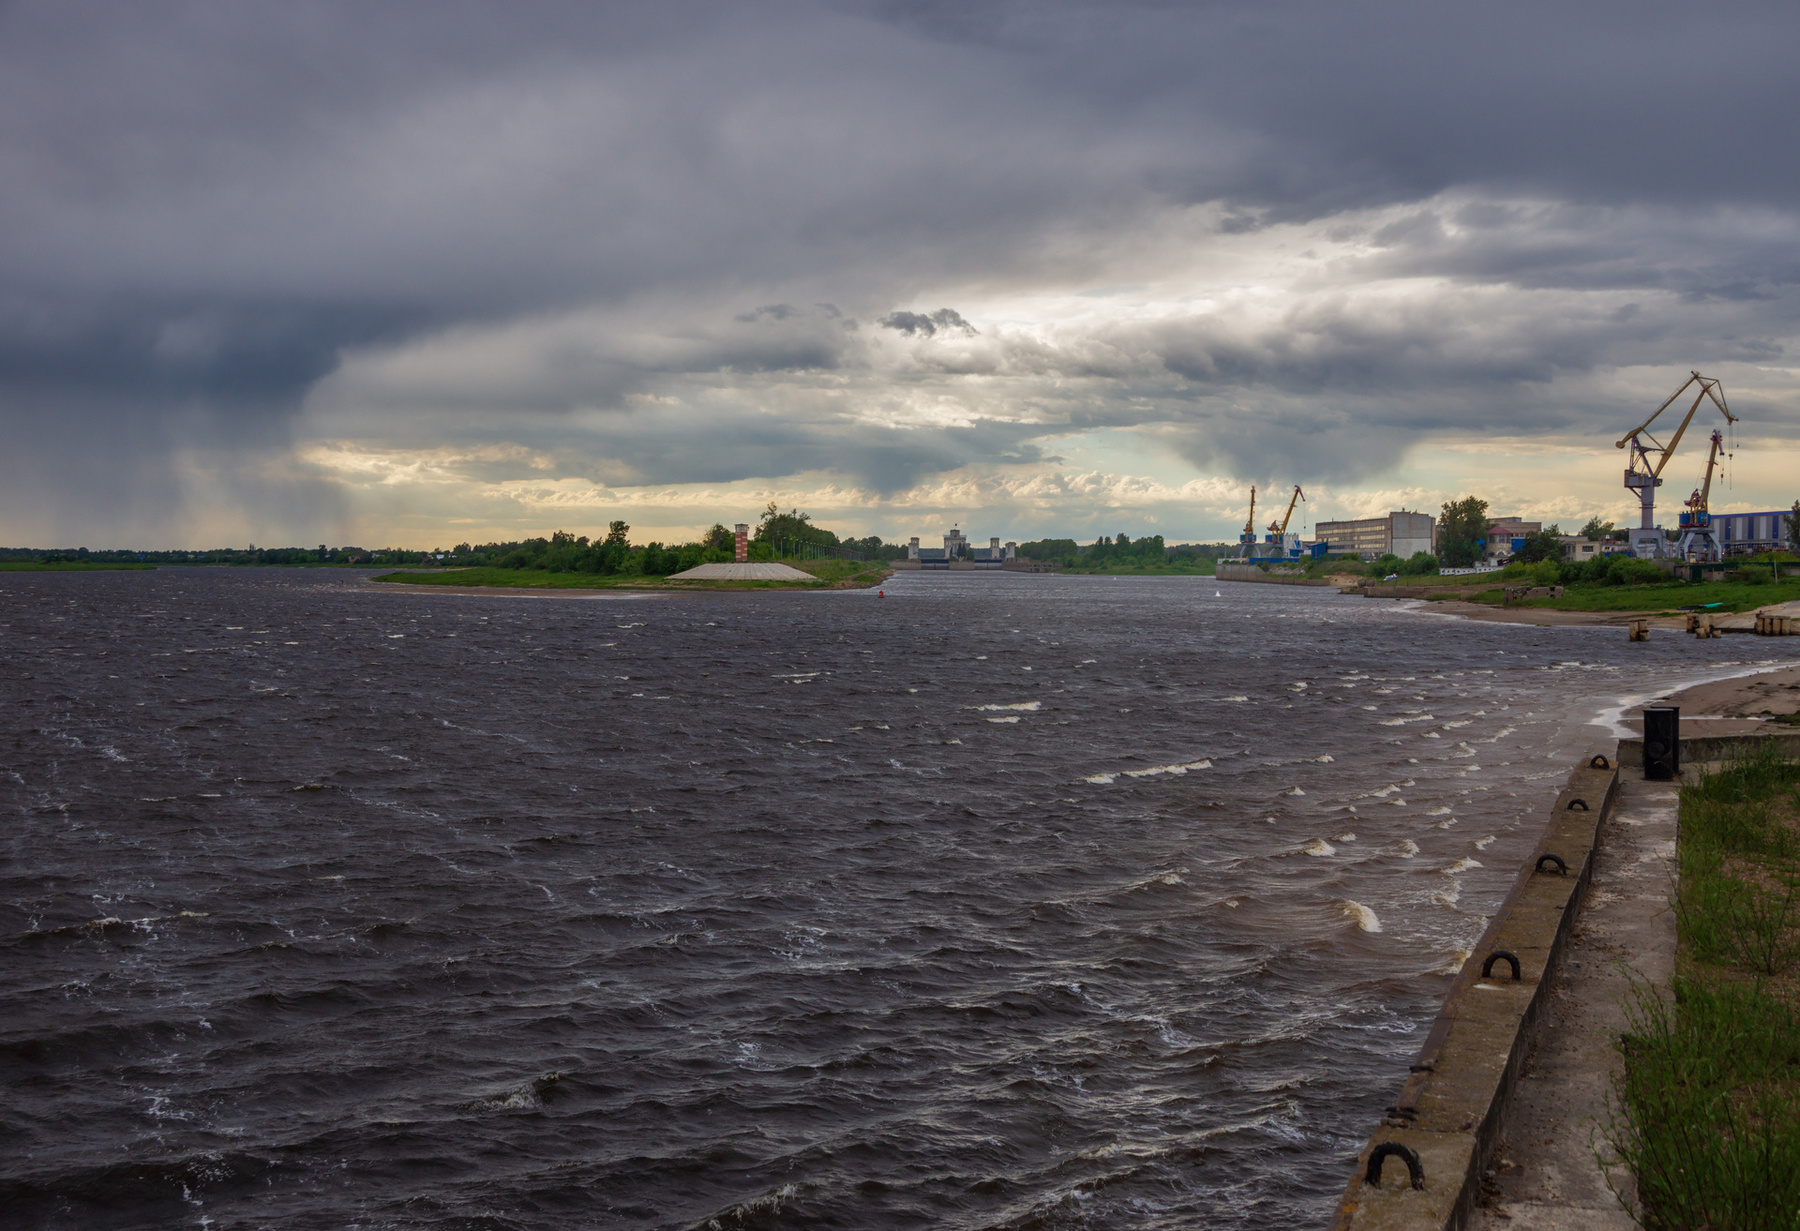 Штормовая Волга путешествия город Городец лето вечер облака туча шлюз река Волга простор солнце